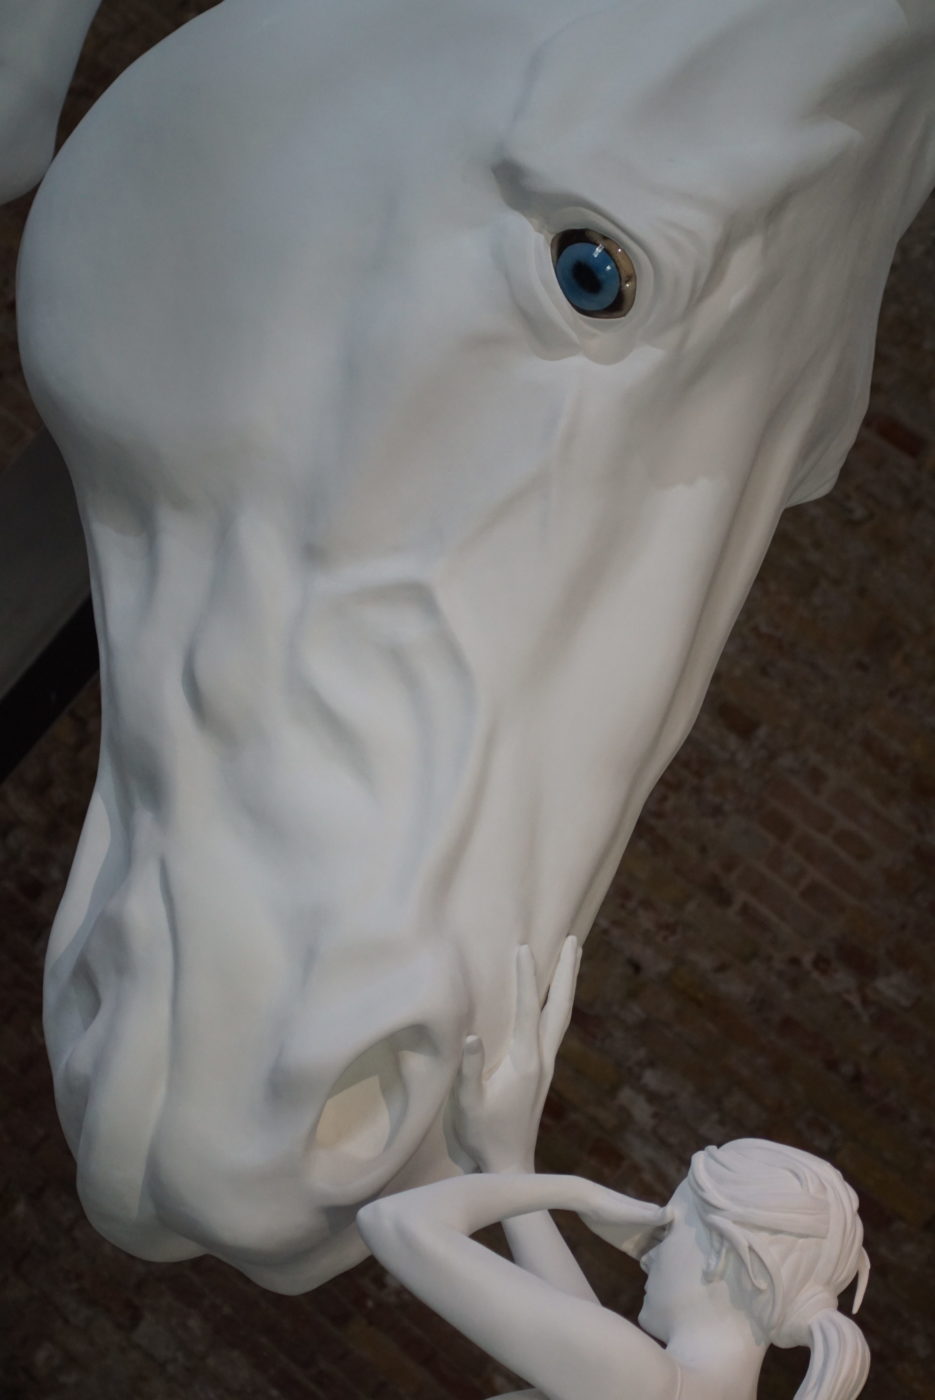 Überdemensionierter Pferdekopf aus Porzellan mit baluen Augen. Eine Frau aus Porzellan die so groß ist wie der Pferdekopf streichelt diesem die Nüstern und bedeckt sich mit der anderen Hand die Augen